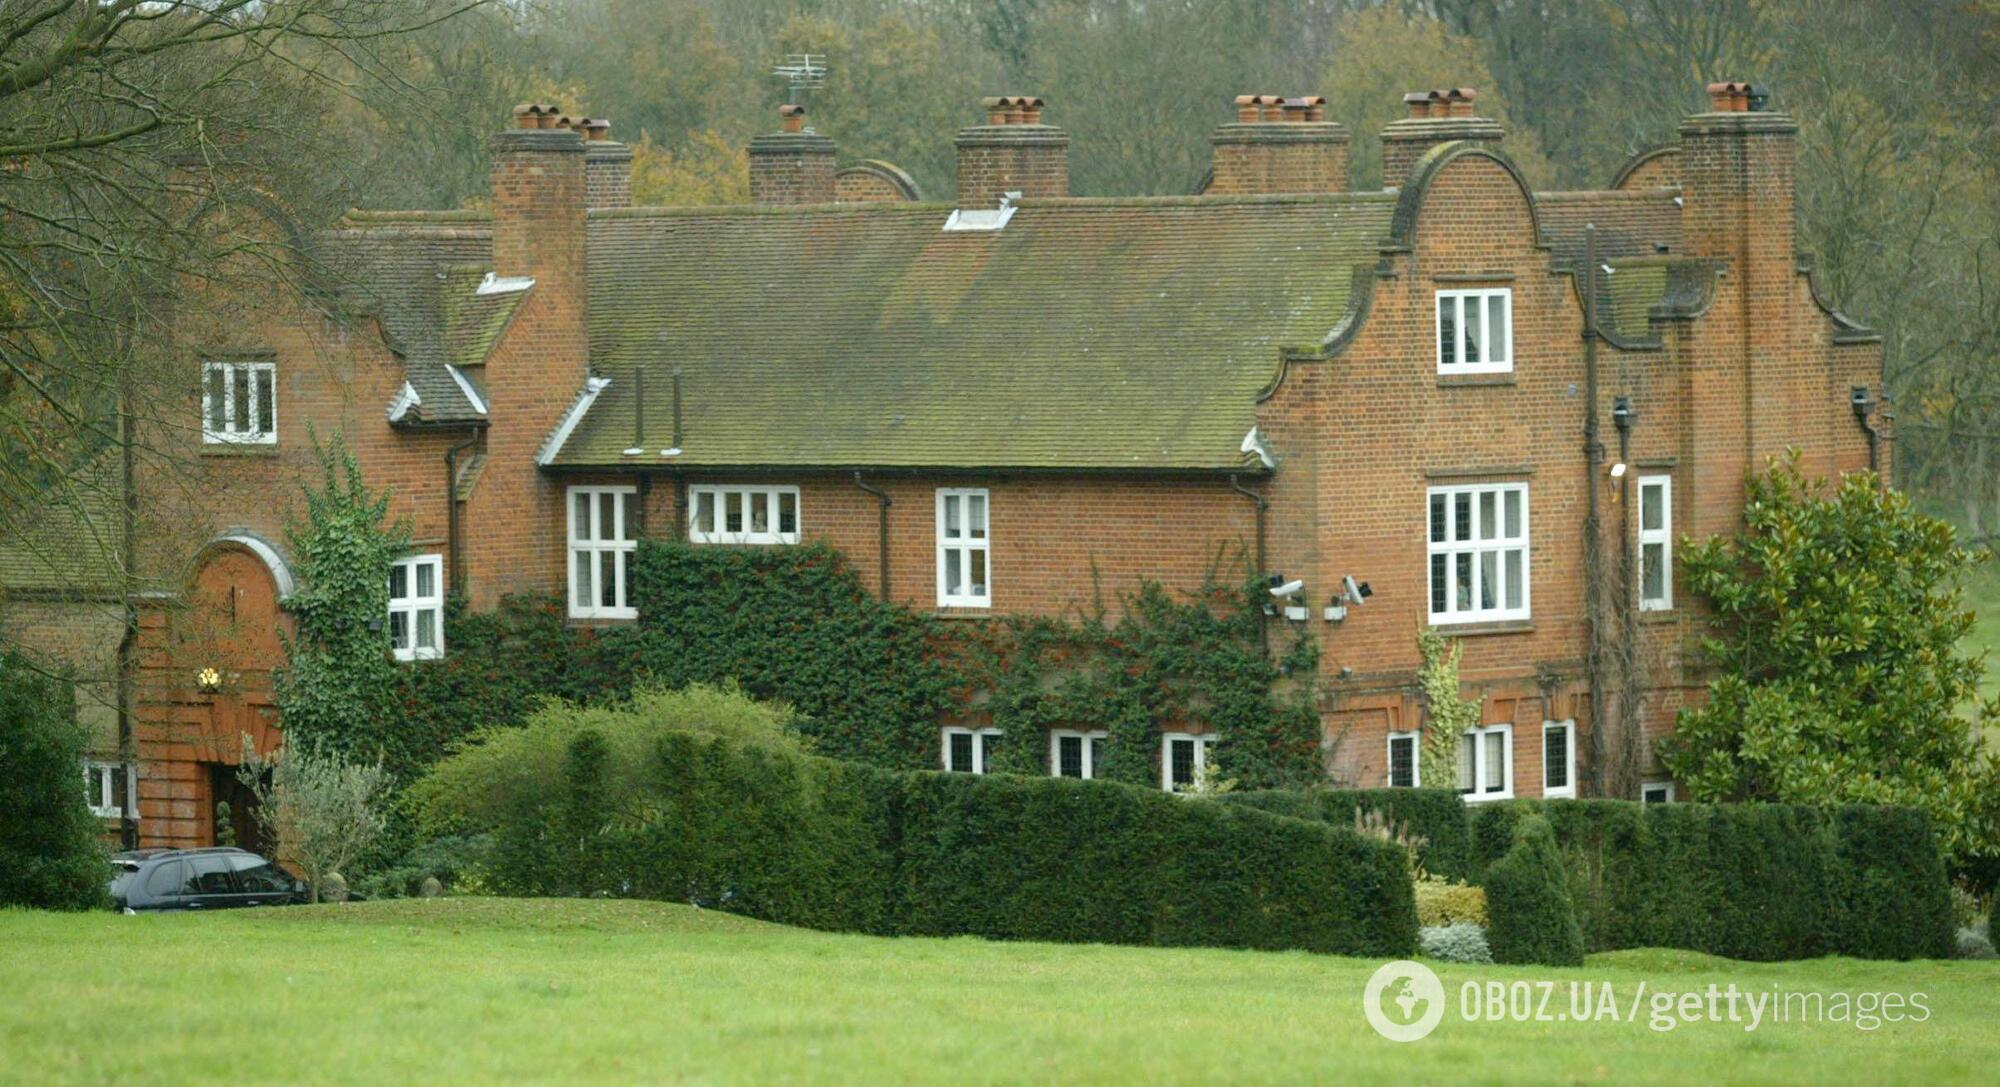 Оззи и Шэрон Осборны купили дом в Бакингемшире в 1993 году